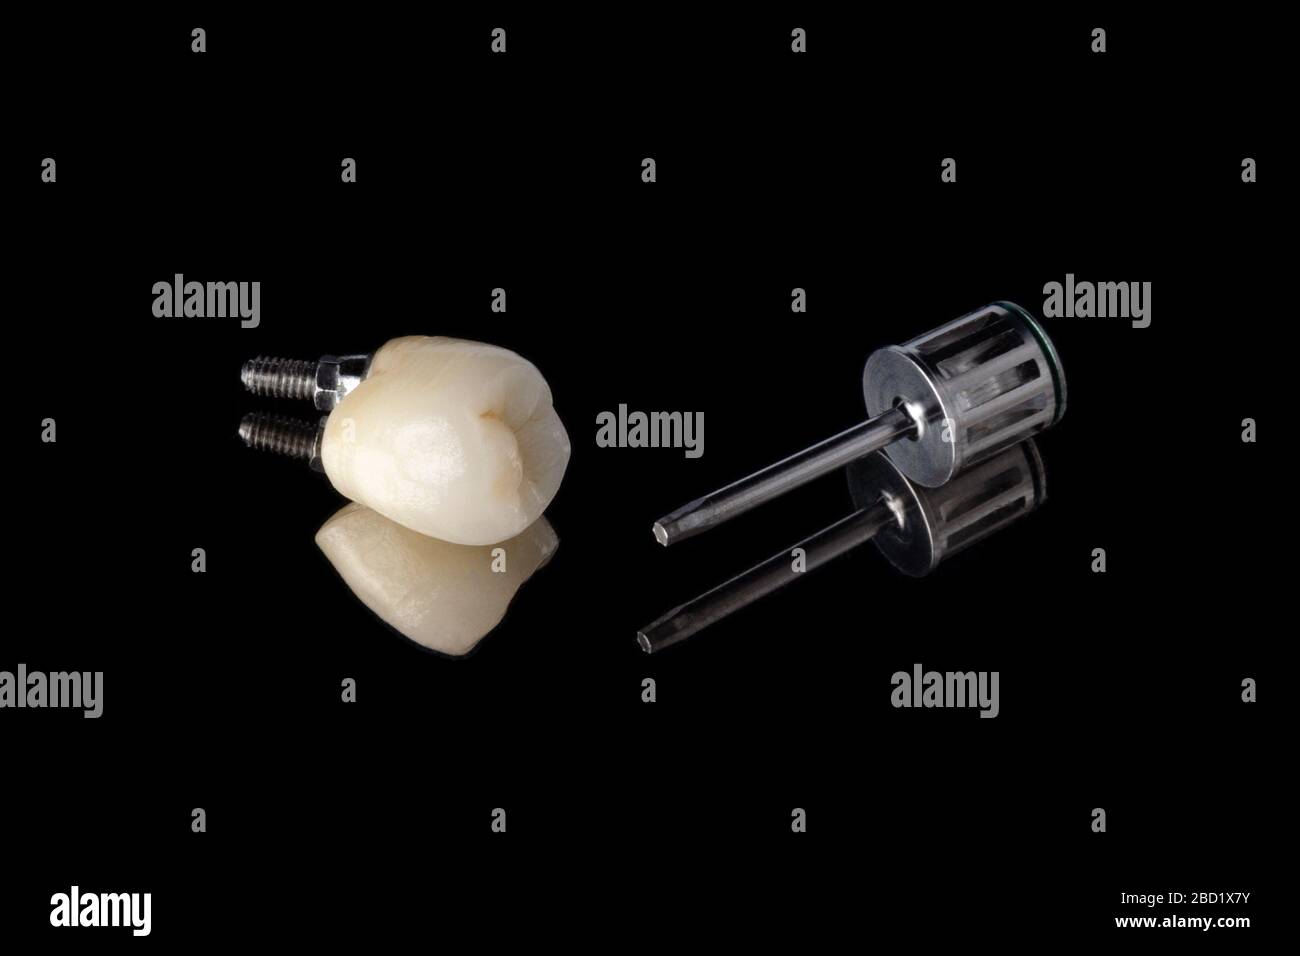 Keramikzahn auf dem Implantat mit ausgeprägter Anatomie und einem Metallschrauber zum Verdrehen der Krone zum Implantat. Isoliert auf schwarzem Hintergrund. Oder Stockfoto